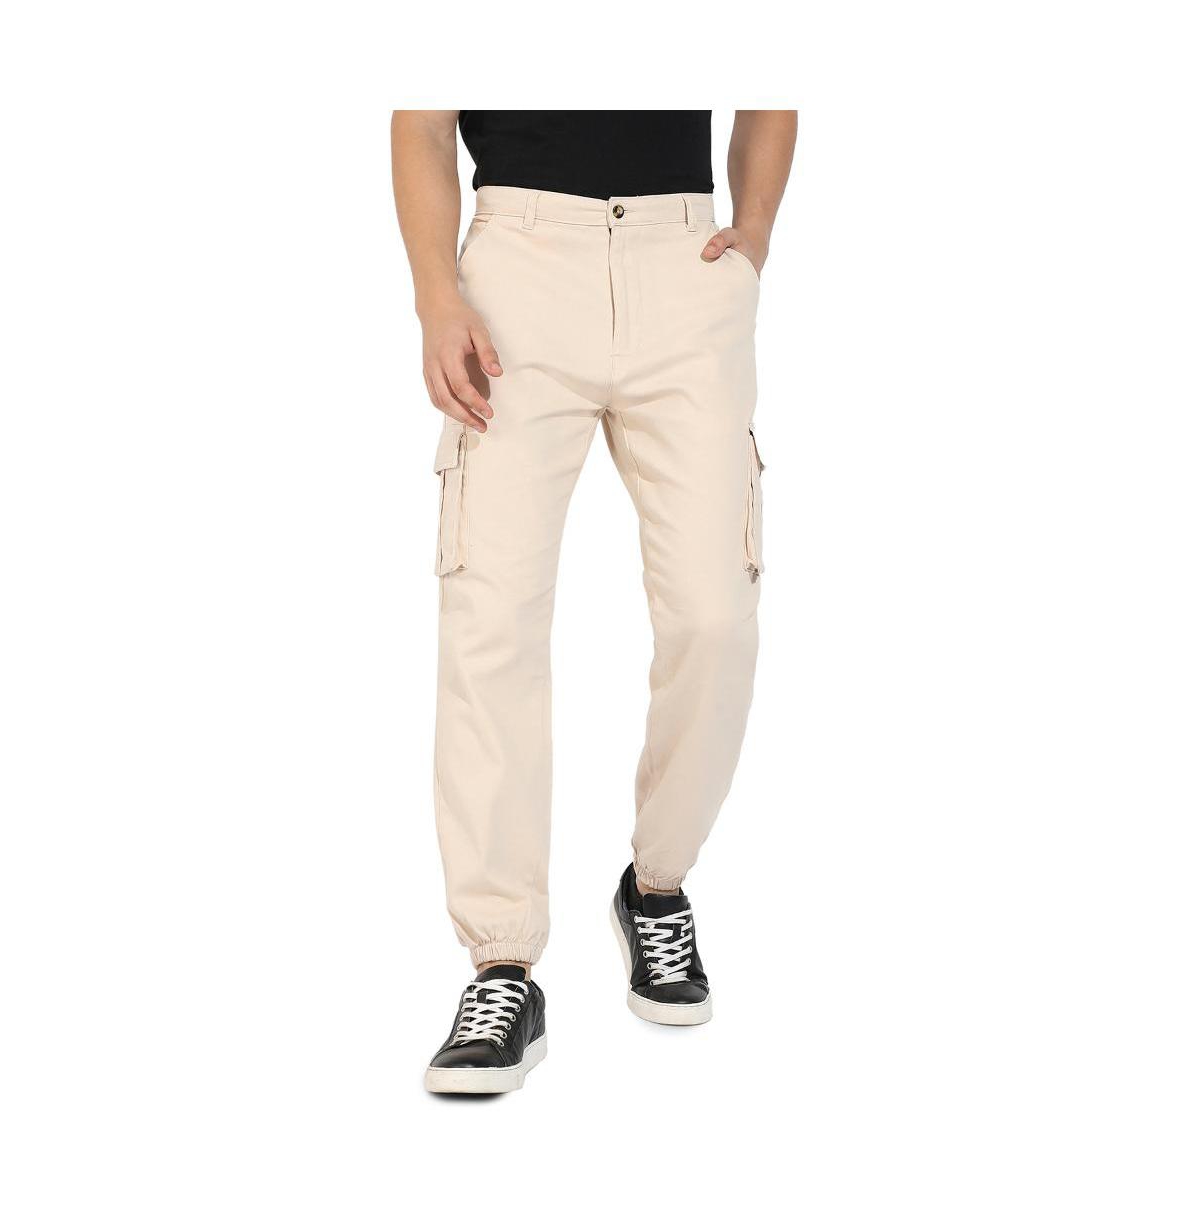 Shop Campus Sutra Men's Beige Cuffed Hem Cargo Trousers